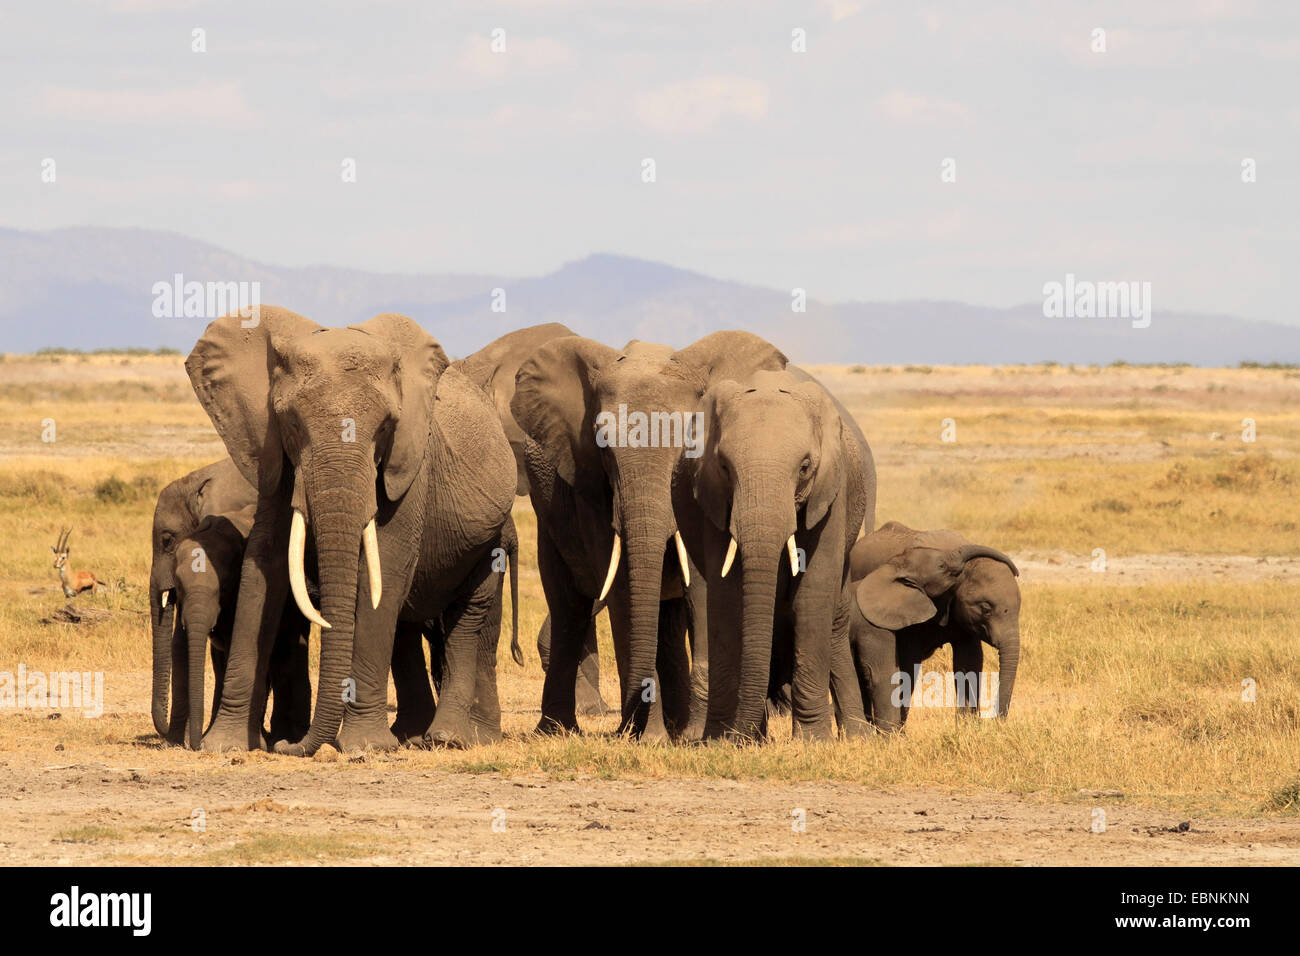 Elefante africano (Loxodonta africana), la manada de elefantes en Savannah, Kenya, el Parque Nacional de Amboseli Foto de stock